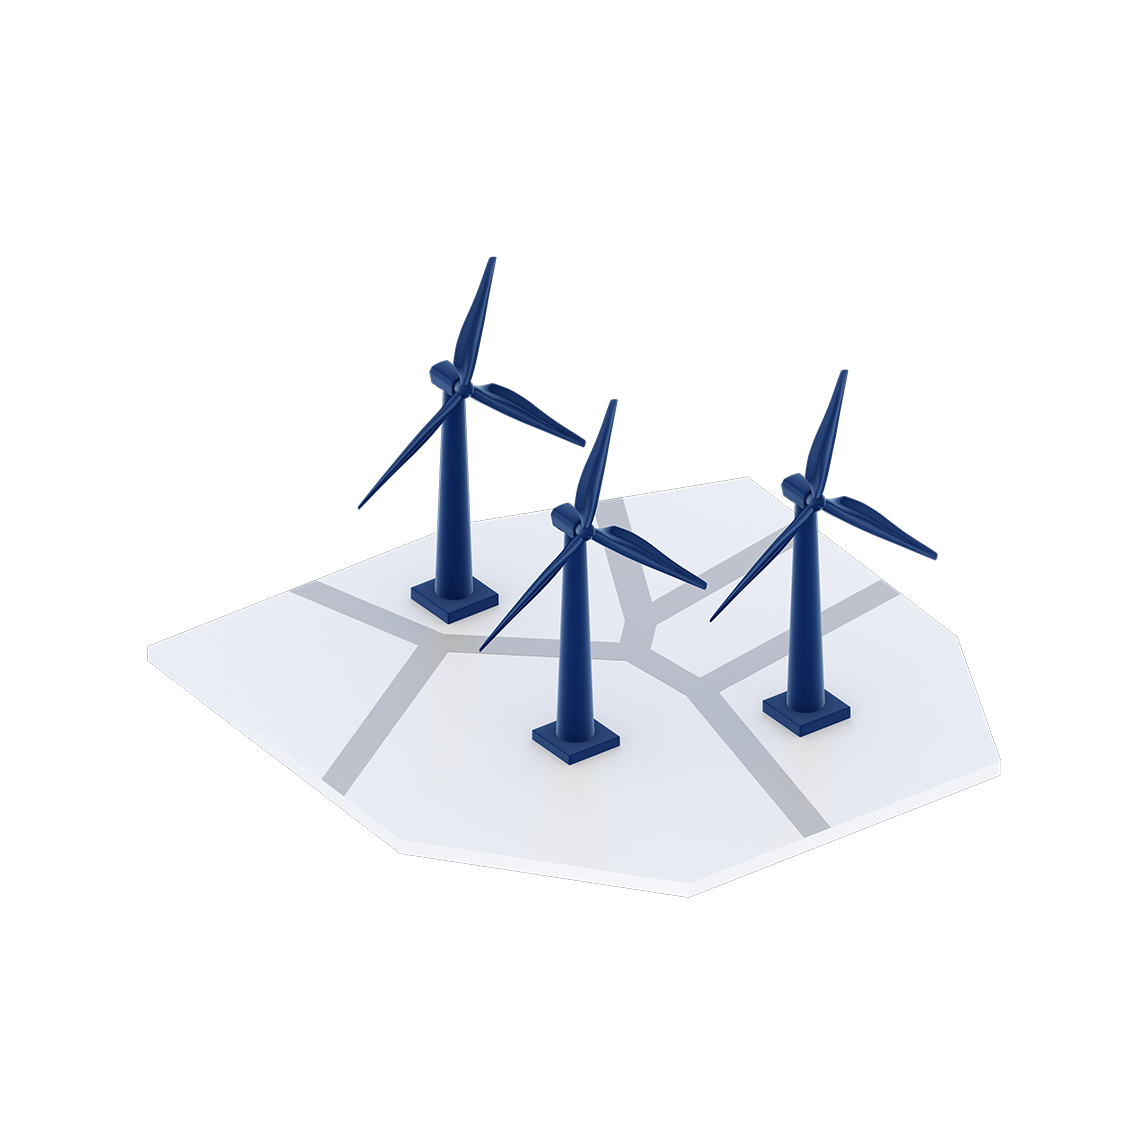 3D-Darstellung von drei Windrädern